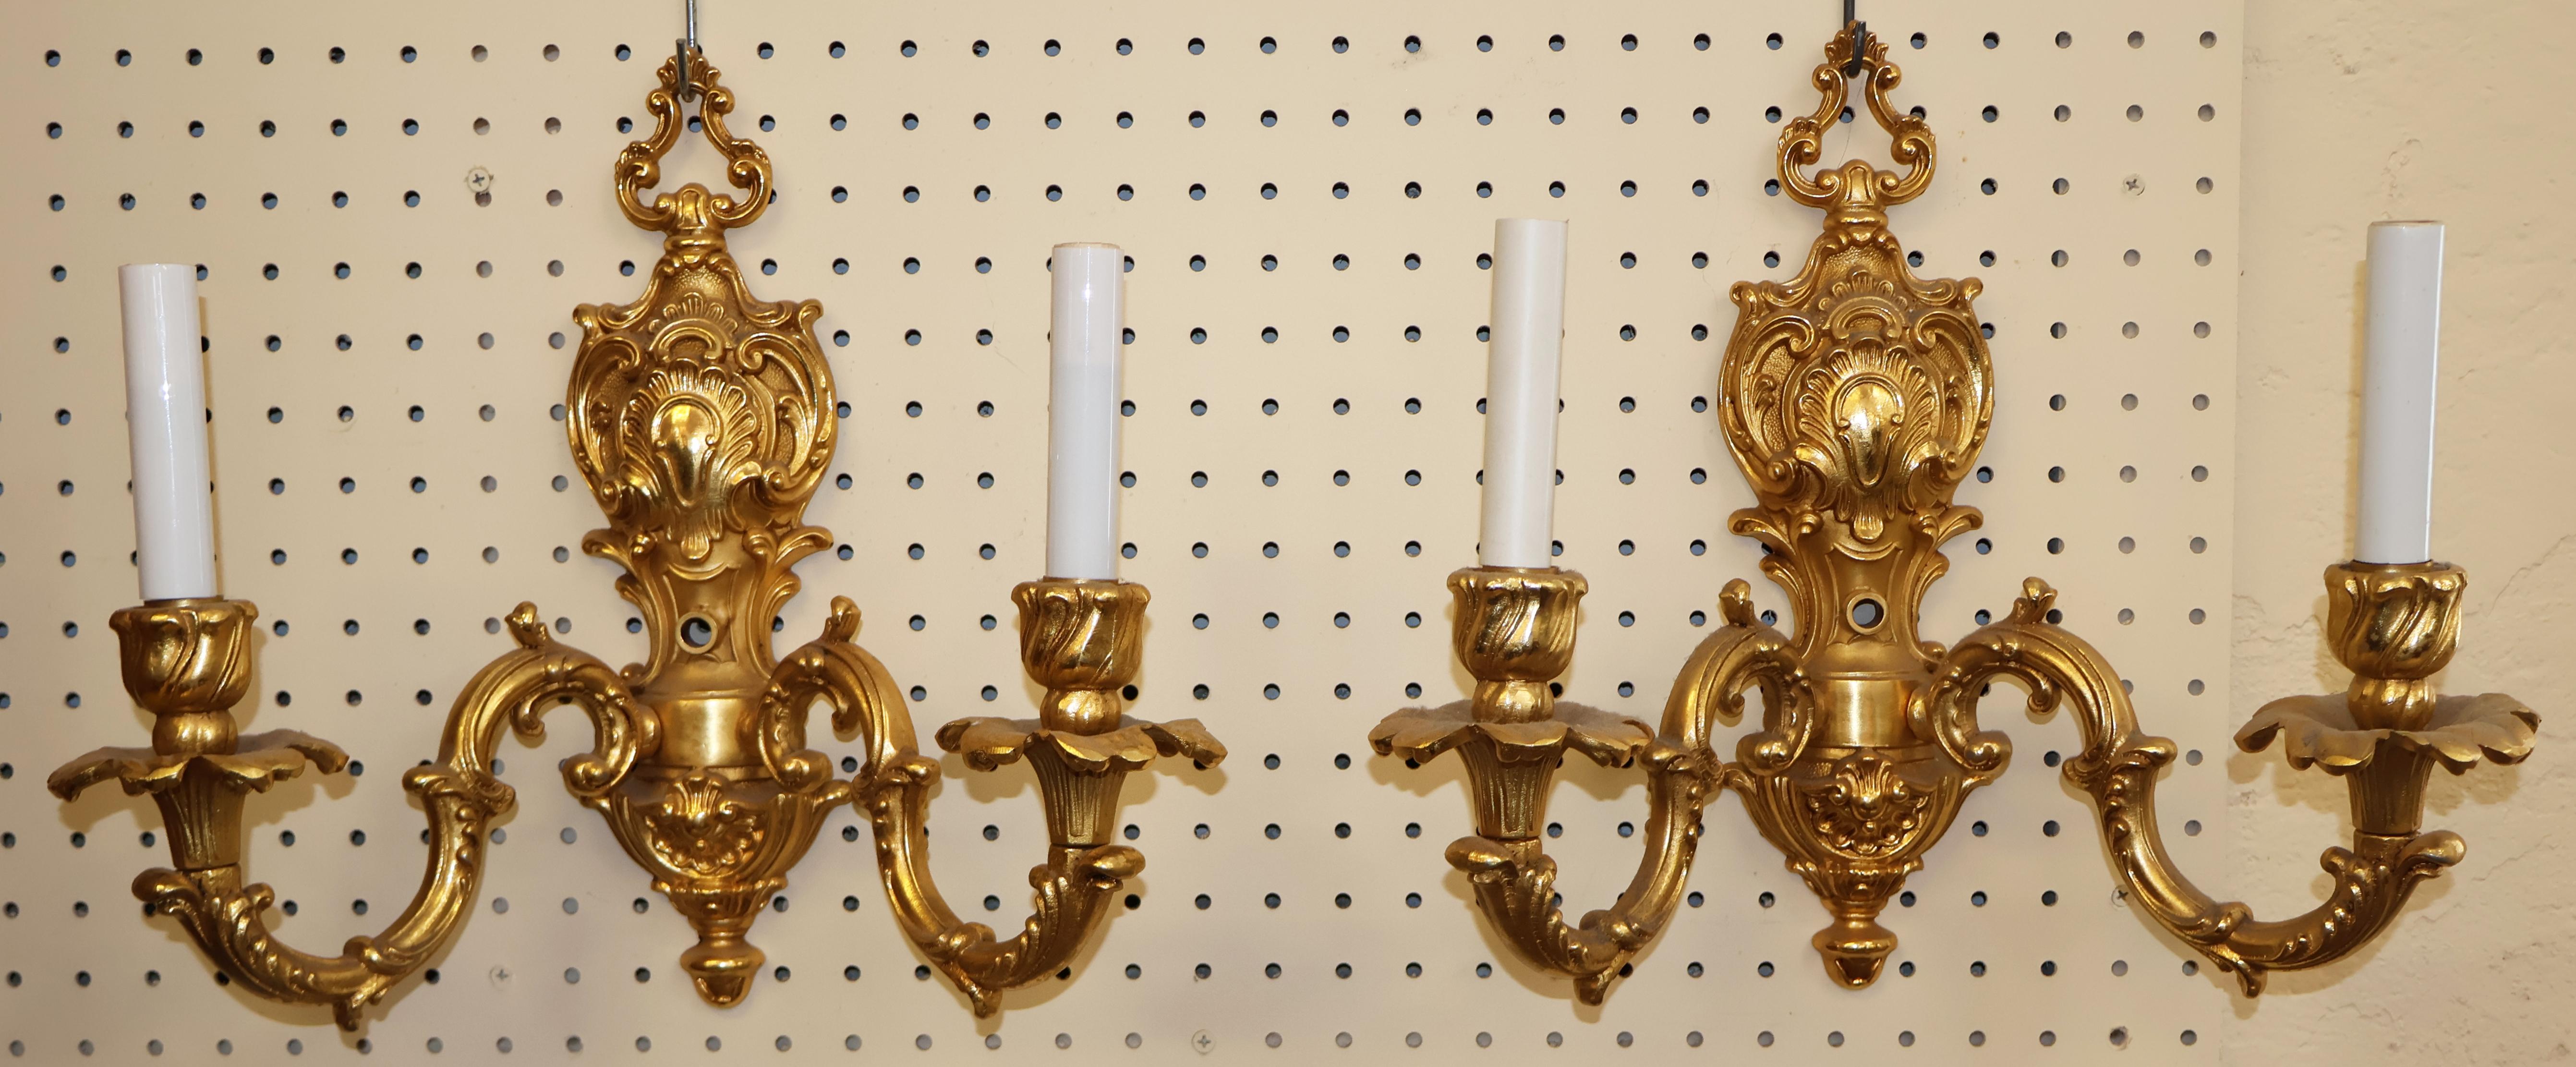 Superbe paire d'appliques à deux lumières en bronze doré par FBAI

Dimensions : 13